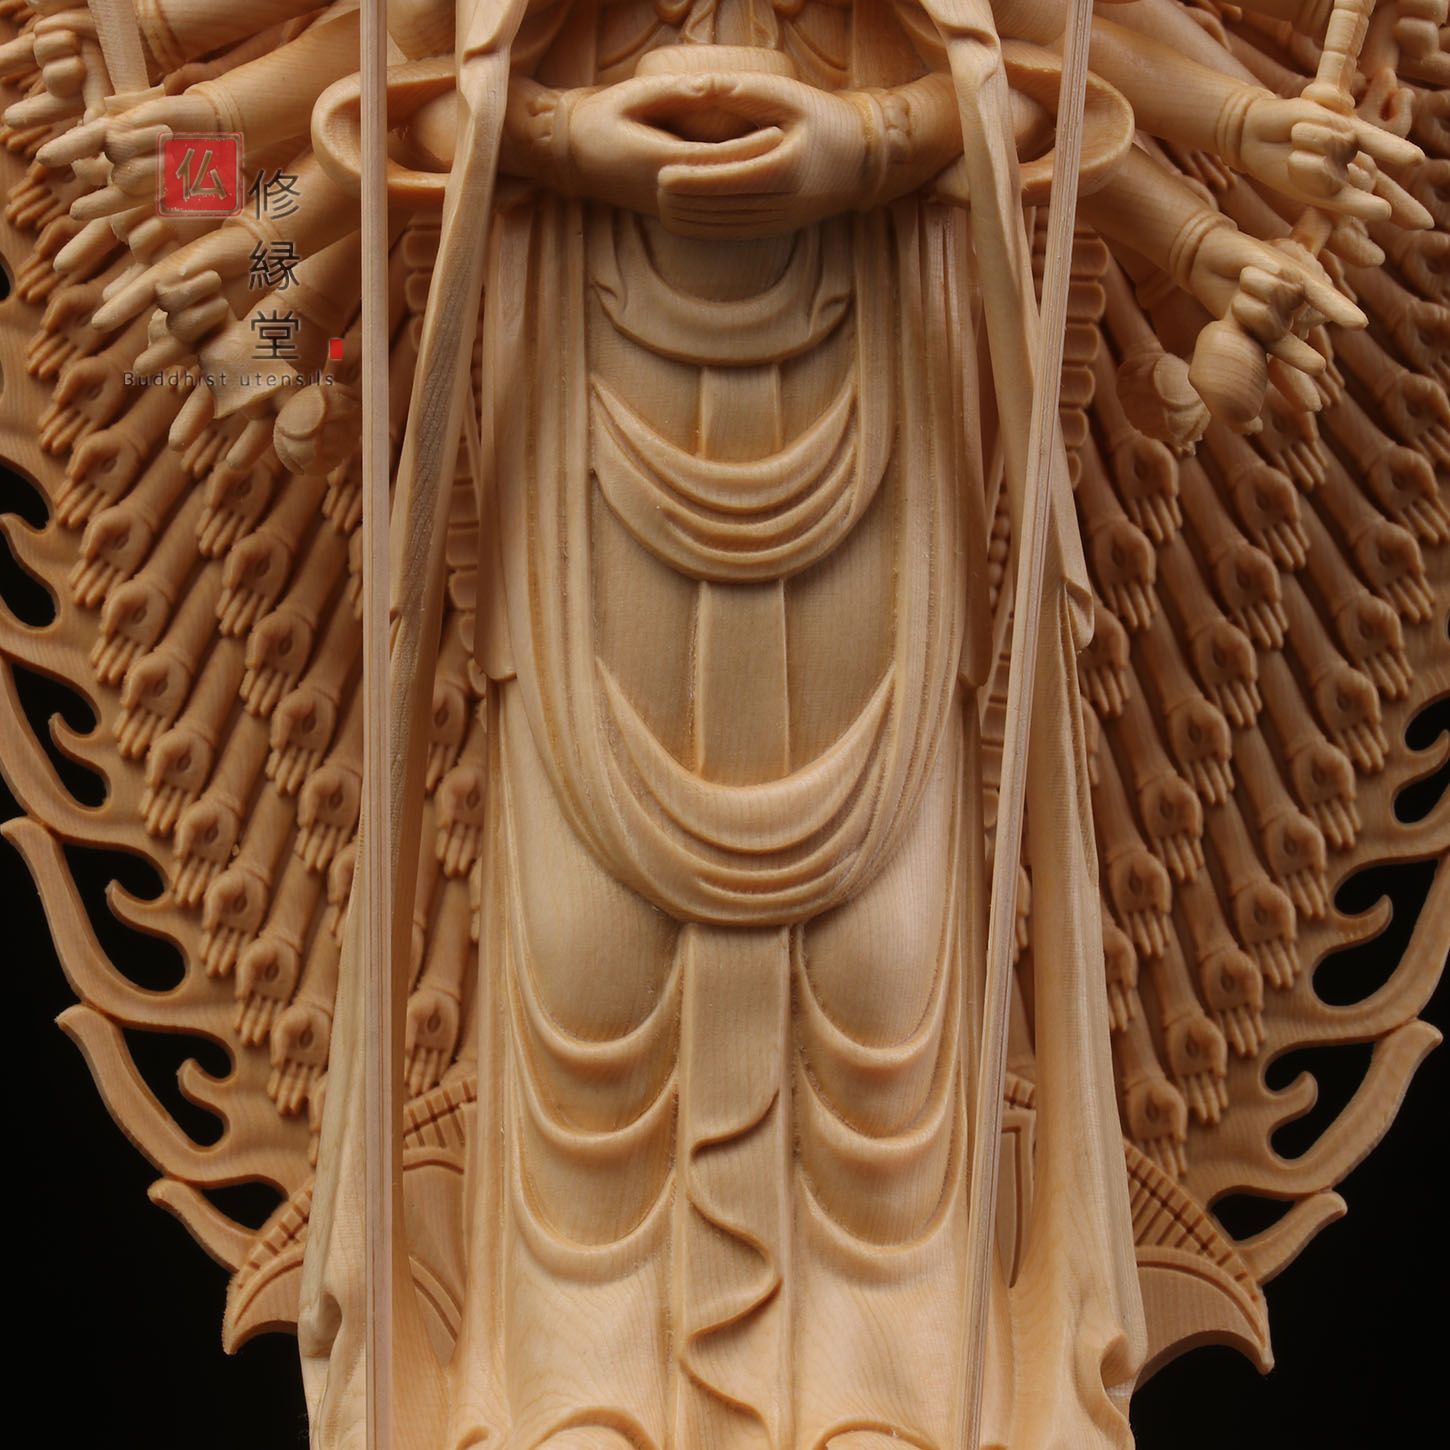 修縁堂】最高級 木彫仏像 千手観音菩薩立像 彫刻 一刀彫 天然木檜材